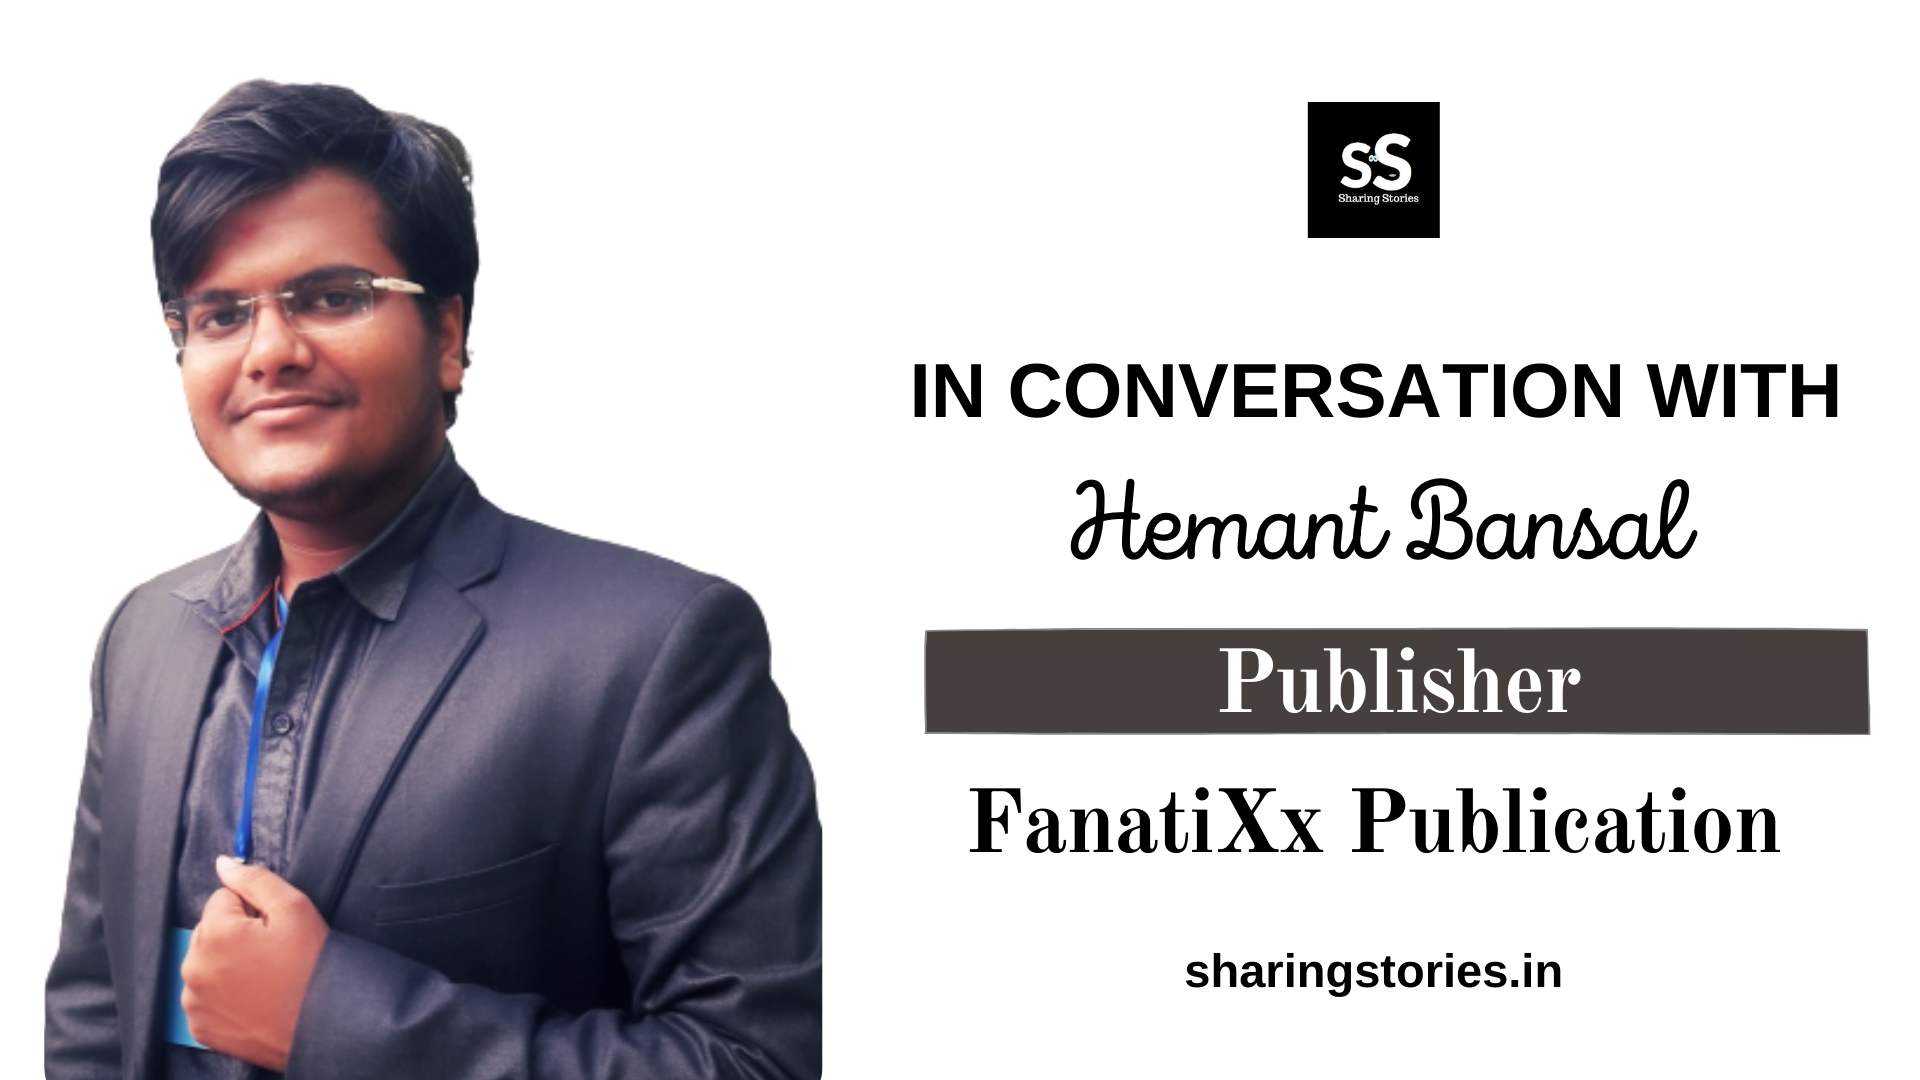 Hemant Bansal FanatiXx Publication